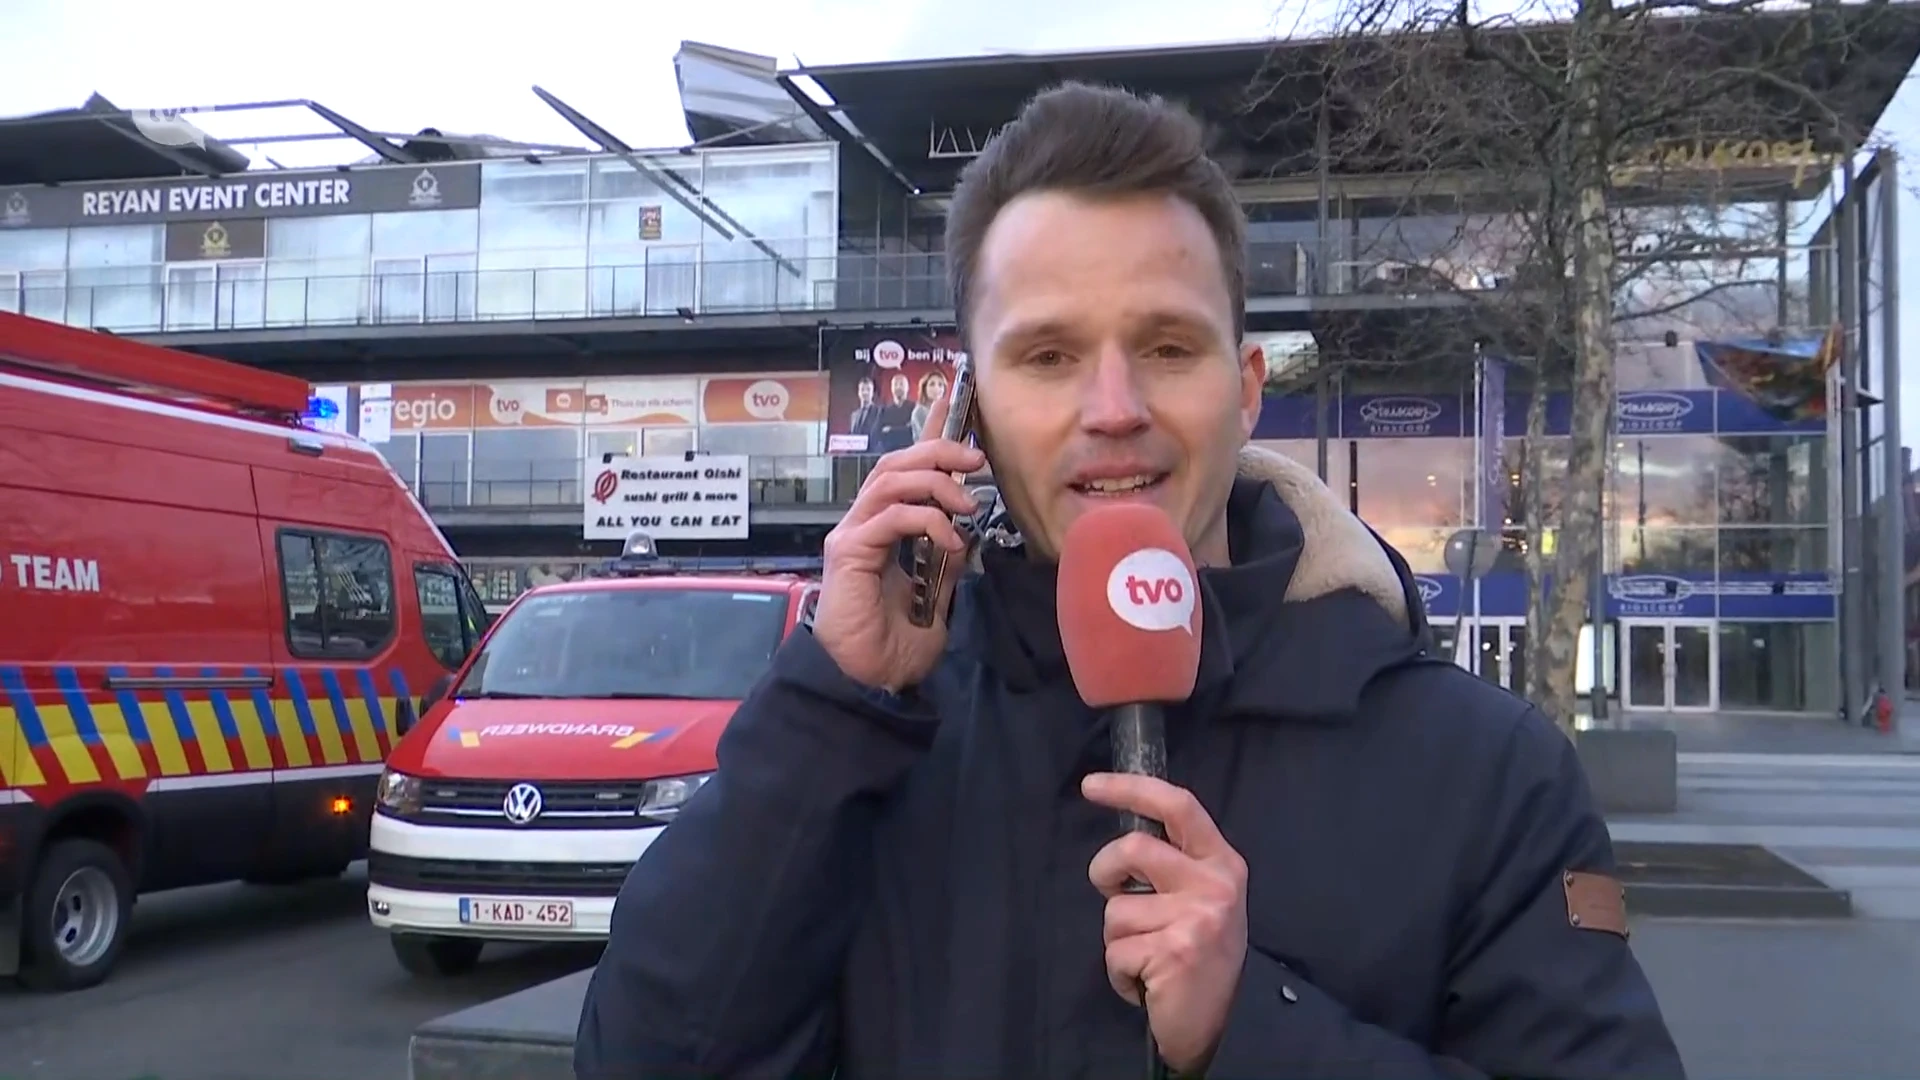 TV Oost ook getroffen door storm, redactie ontruimd, hoofdredacteur Stavros Van Halewyck geeft live update